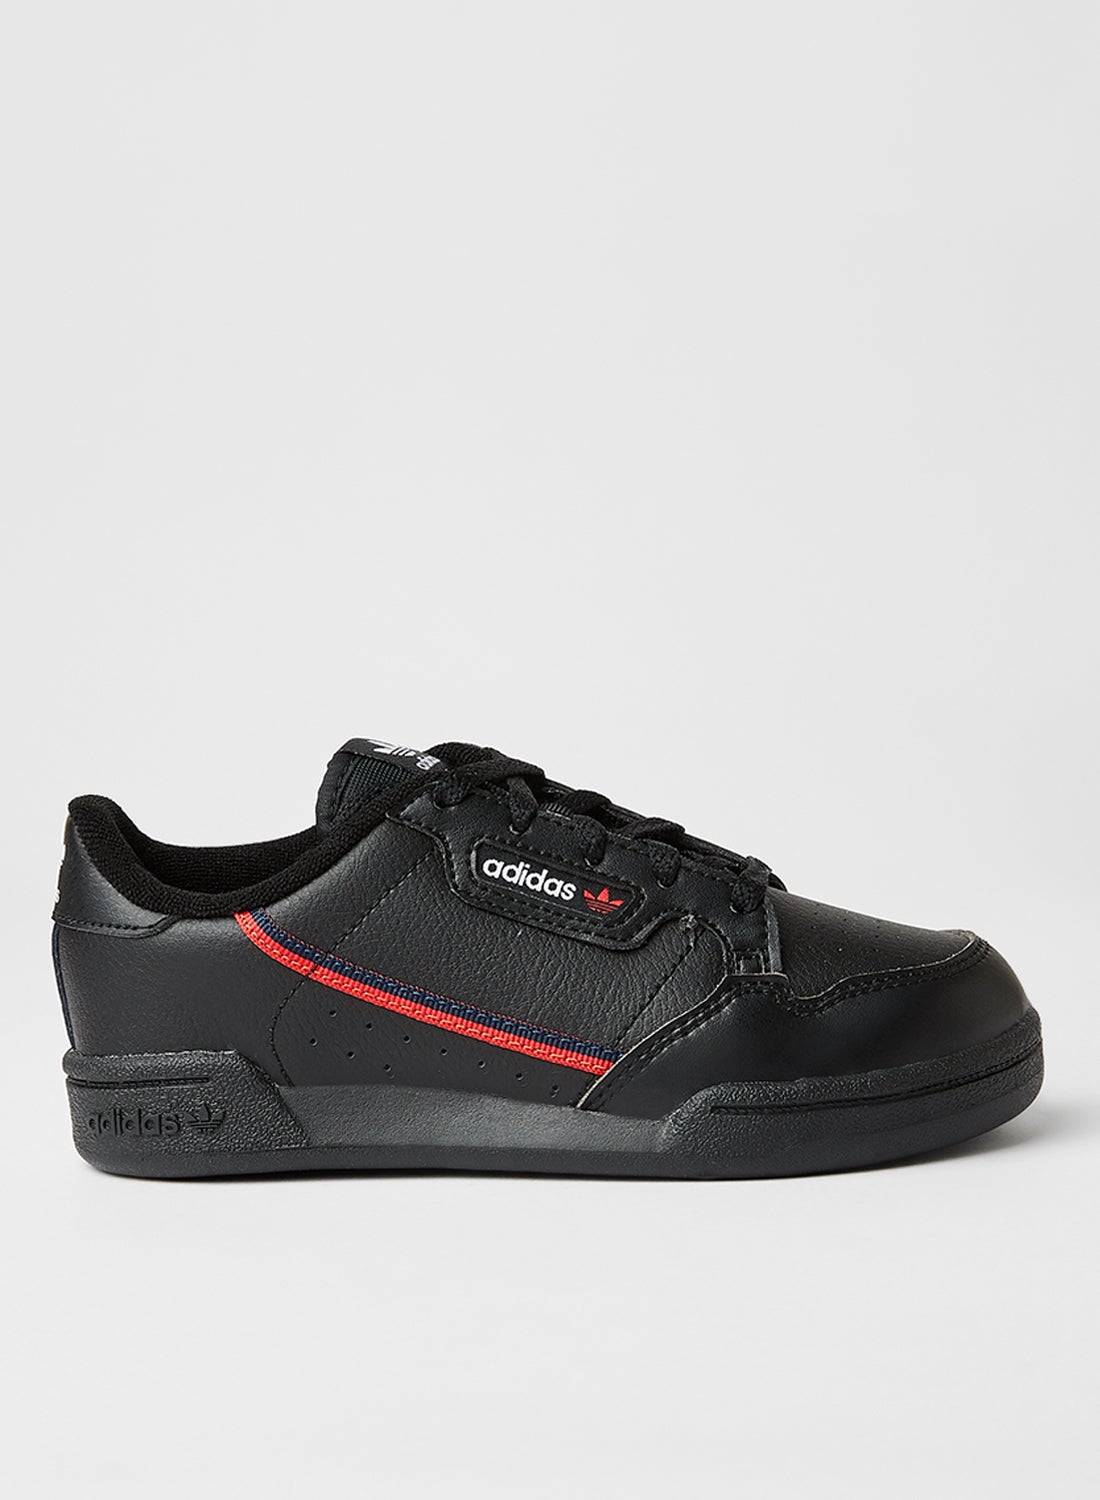 adidas Originals Continental 80 Sneakers CBLACK/SCARLE/CONAVY